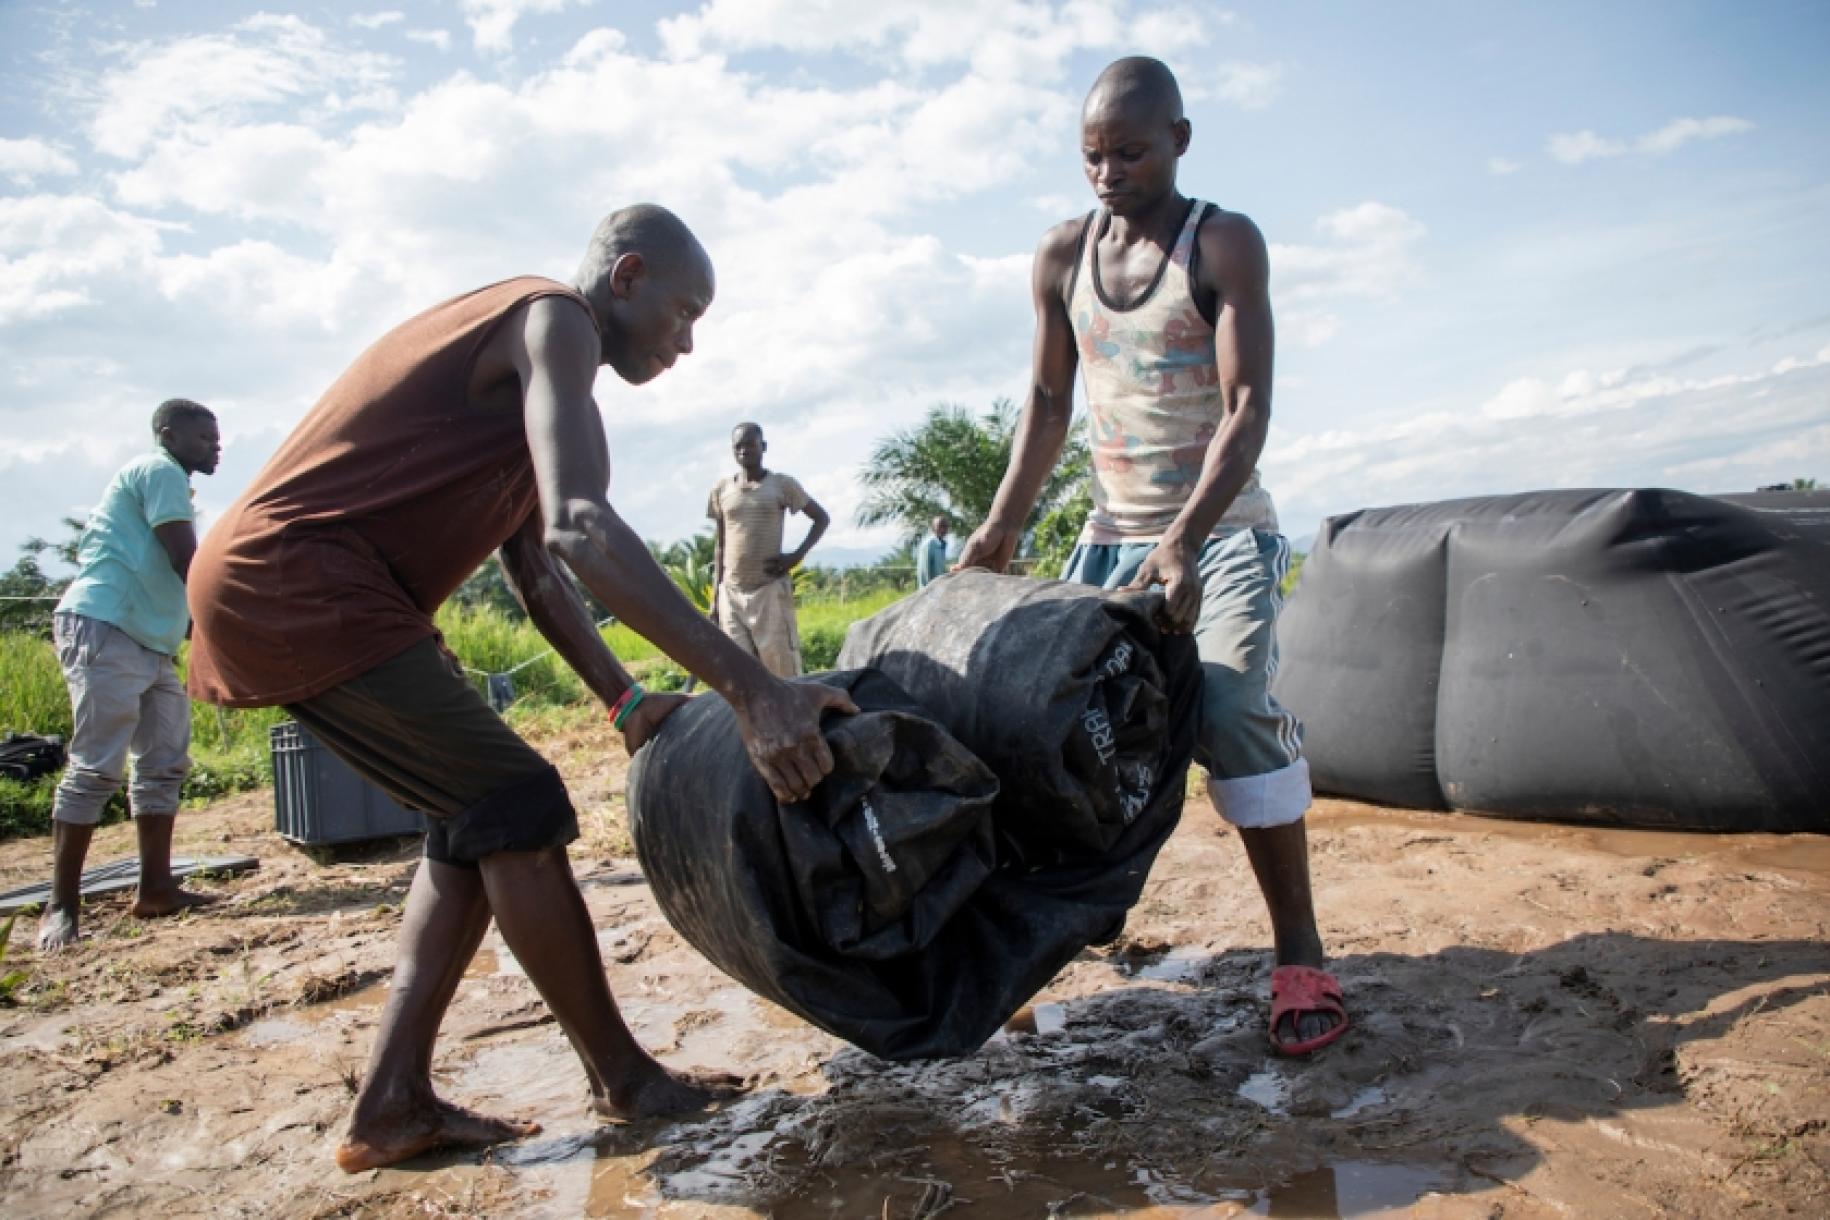 Au Burundi, par une journée ensoleillée, deux jeunes hommes soulèvent une grande bâche noire enroulée sur elle-même au milieu d'un terrain boueux, sous le regard de deux autres hommes se tenant à proximité.